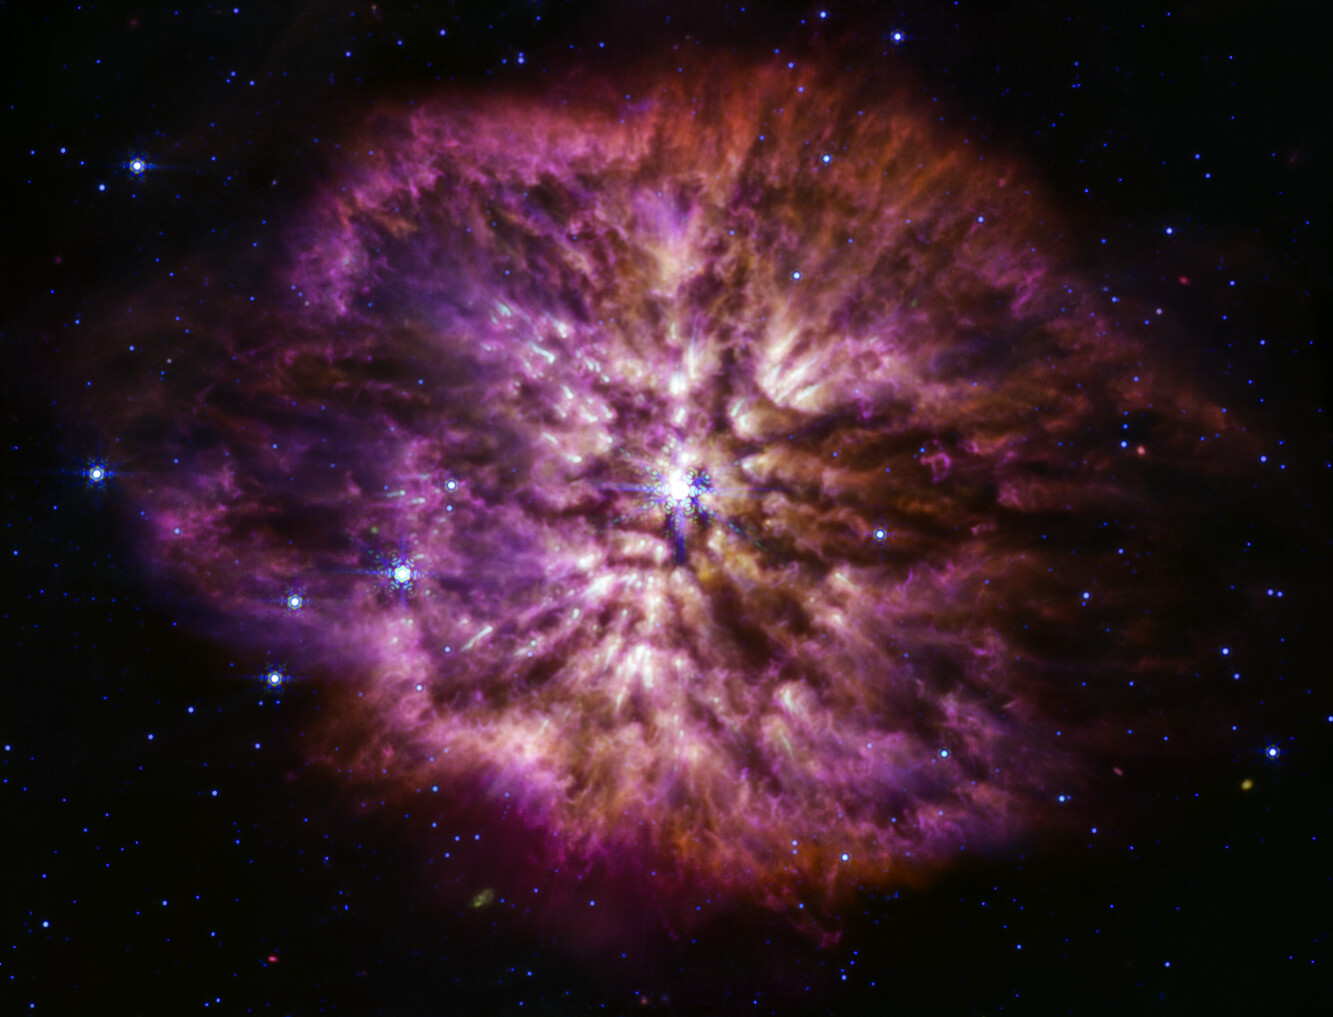 Na ilustracji: Gwiazda Wolf Rayet 124 (WR 124) jest widoczna w środku zdjęcia w średniej podczerwieni zrobionego instrumentem MIRI w Teleskopie Webba.  Wiemy, że wokół gwiazd Wolfa-Rayeta jest intensywnie wytwarzany pył i szczególnie dobrze widać to na zdjęciach w średniej podczerwieni zrobionych instrumentem MIRI w Teleskopie Webba. Chłodniejszy pył kosmiczny świeci w większych długościach fali (średnia podczerwień), prezentując strukturę mgławicy WR 124, którą oznaczono M1-67. Ta mgławica jest zbudowana z materii utraconej przez starzejącą się gwiazdę WR 124 wyniku przypadkowych wyrzutów materii oraz pyłu wytworzonego w tym turbulentnym środowisku. Ten widowiskowy okres utraty masy poprzedza ostateczny jej wybuch jako supernowej, gdy w jądrze gwiazdy zatrzymują się reakcje termojądrowe i siły grawitacji powodują w ułamku sekundy kolaps jądra gwiazdy, po którym następuje odbicie się fali uderzeniowej i często wybuch supernowej. Dzięki tak szczegółowym zdjęciom jak zdjęcie WR 124 z MIRI, astronomowie będą mogli uzyskiwać odpowiedzi na pytania, które wcześniej mogły być analizowane tylko teoretycznie:     • Ile pyłu może wytworzyć gwiazda taka, jak WR 124 przed wybuchem supernowej?     • Jak wiele pyłu potrzeba, aby przetrwał wybuch supernowej i służył dalej jako materiał budulcowy do budowy gwiazd i planet? Na zdjęciu w barwie czerwonej pokazano obserwacje dla filtrów o średnich długościach fali 12,8 / 18 μm, w barwie zielonej – 11,3 μm, w barwie niebieskiej – 7,7 μm. Źródło: NASA, ESA, CSA, STScI, Webb ERO Production Team